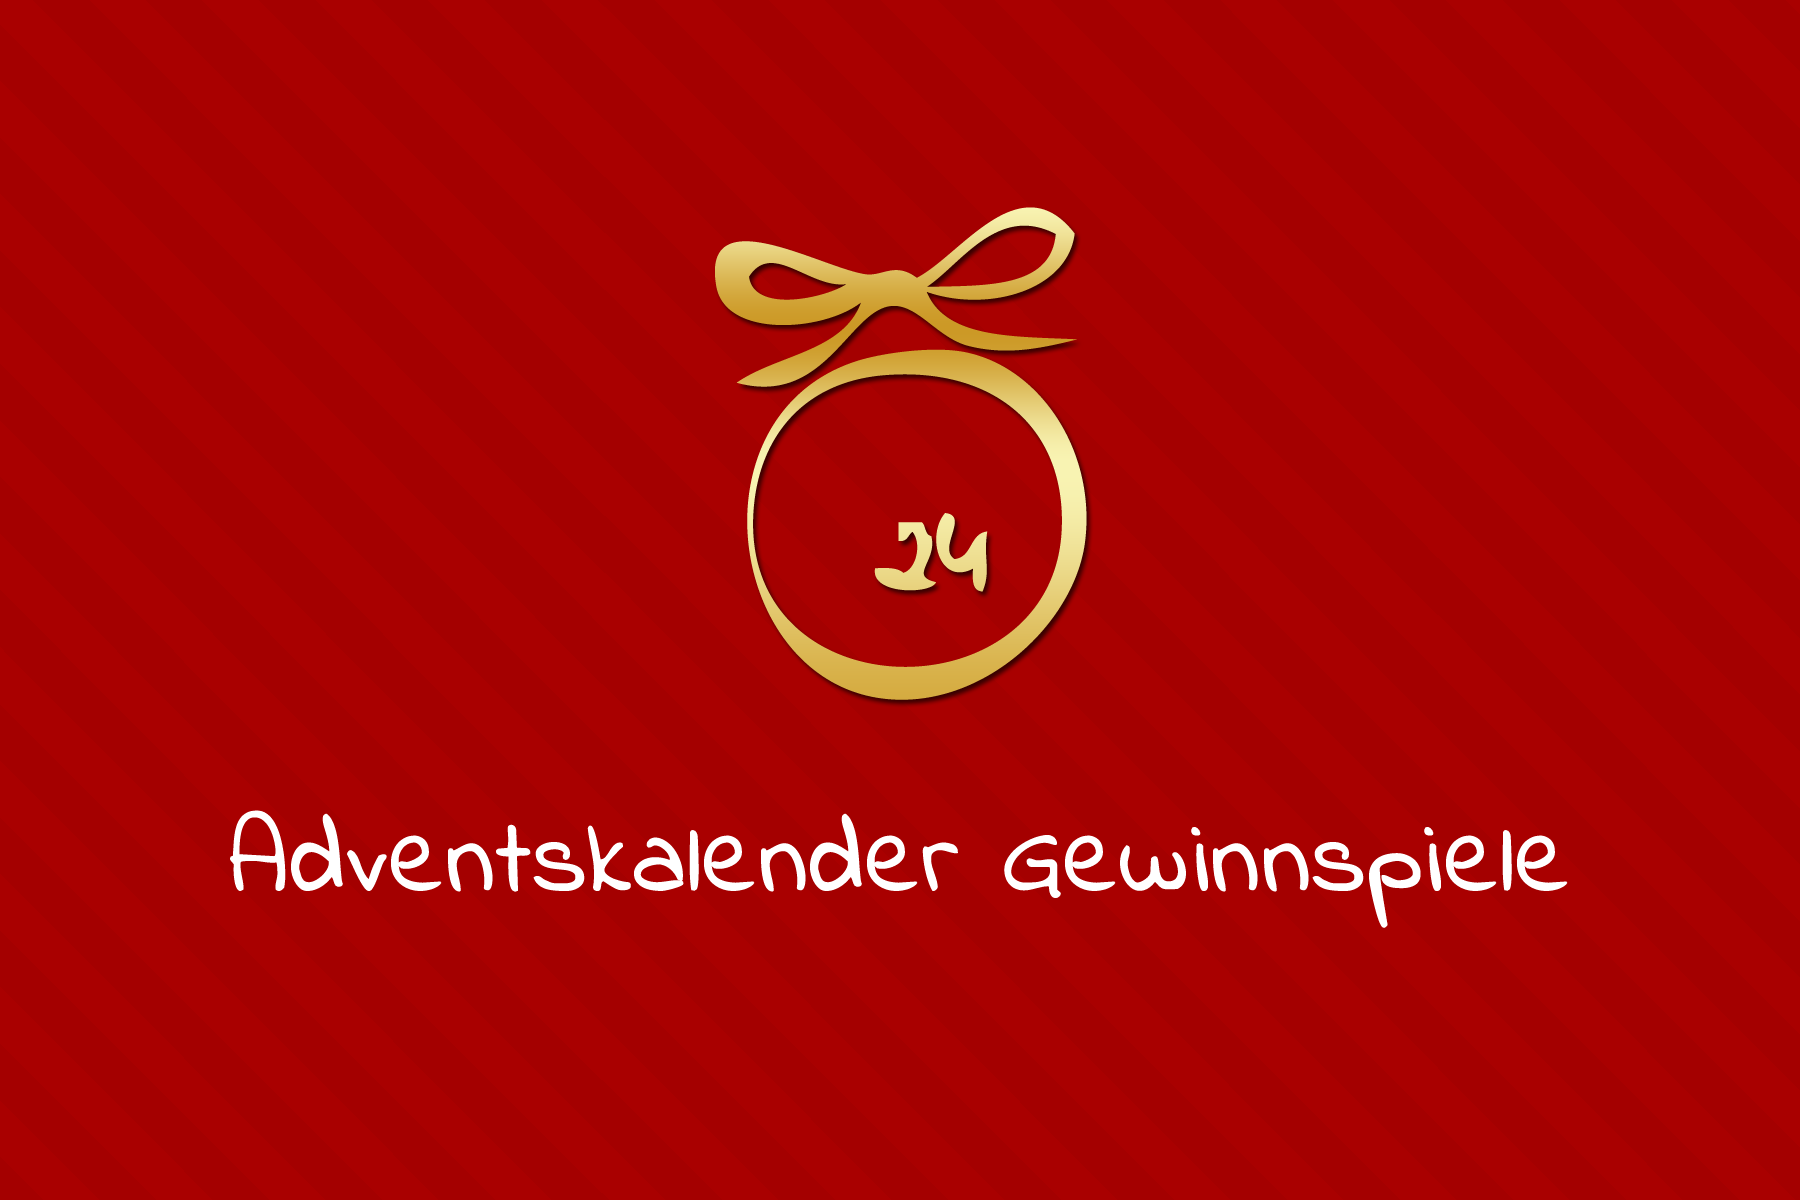 www.adventskalender-gewinnspiele.de